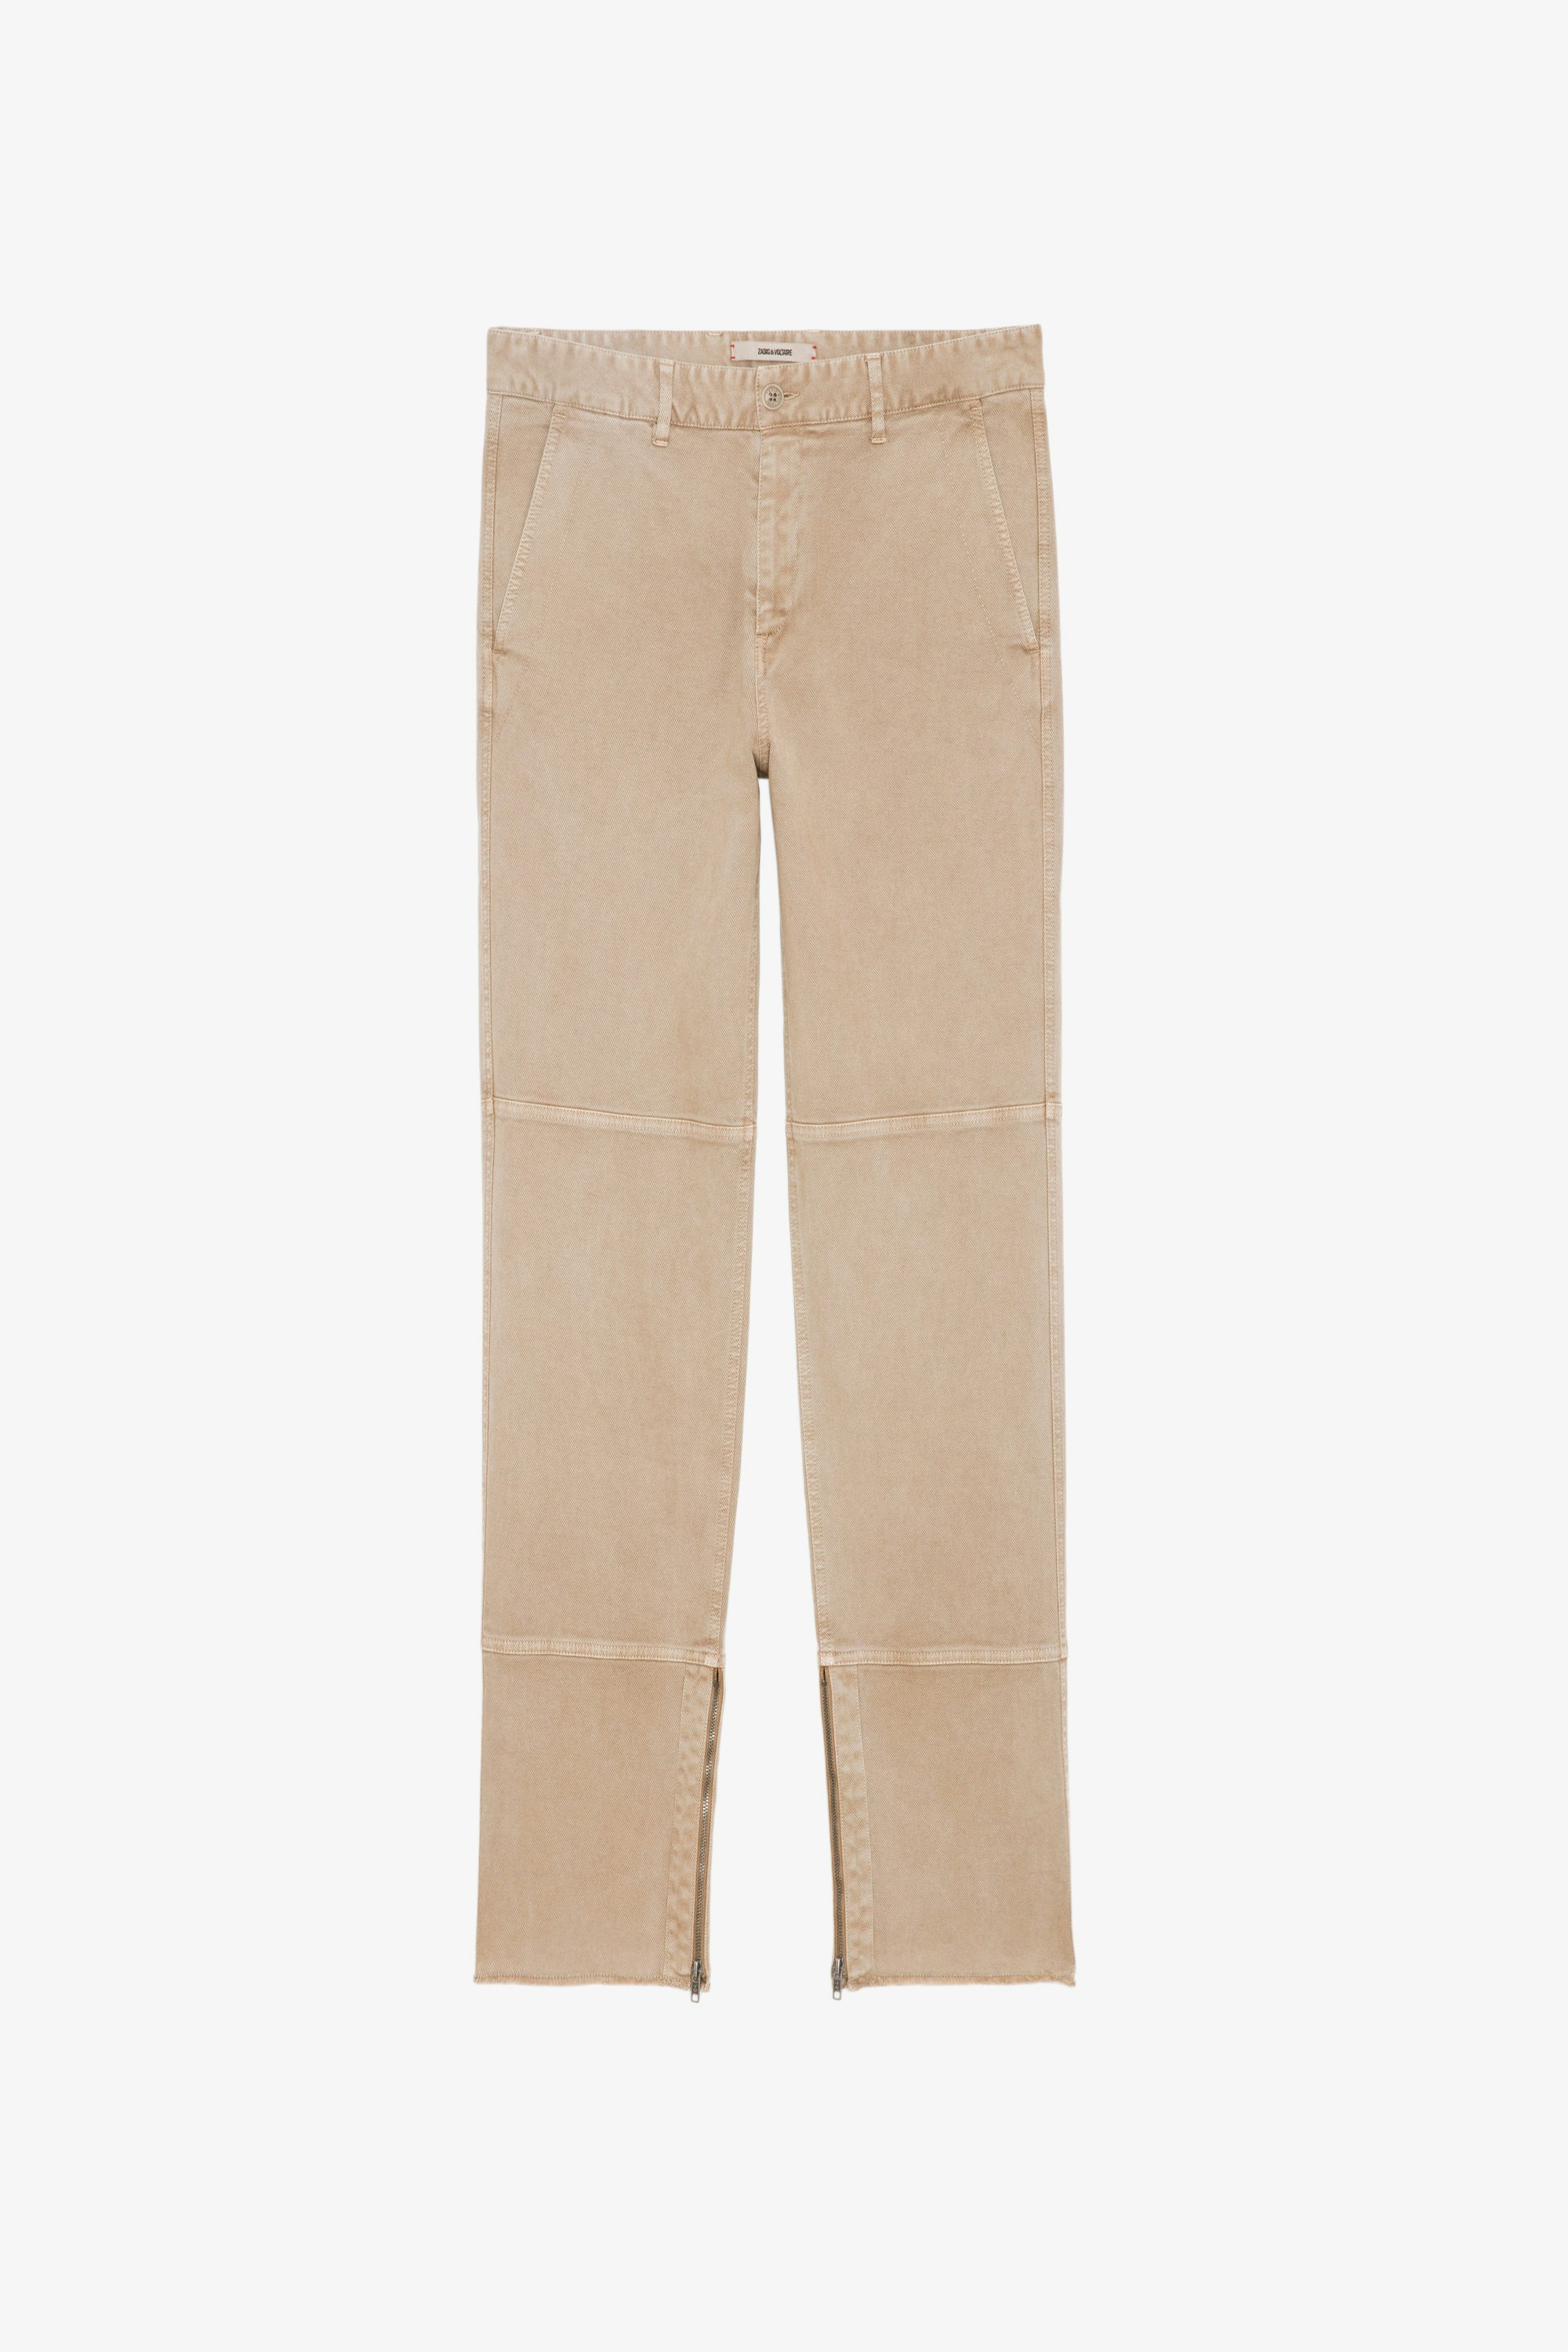 Pantalon Pocky - Pantalon en coton beige clair zippé à bords bruts.